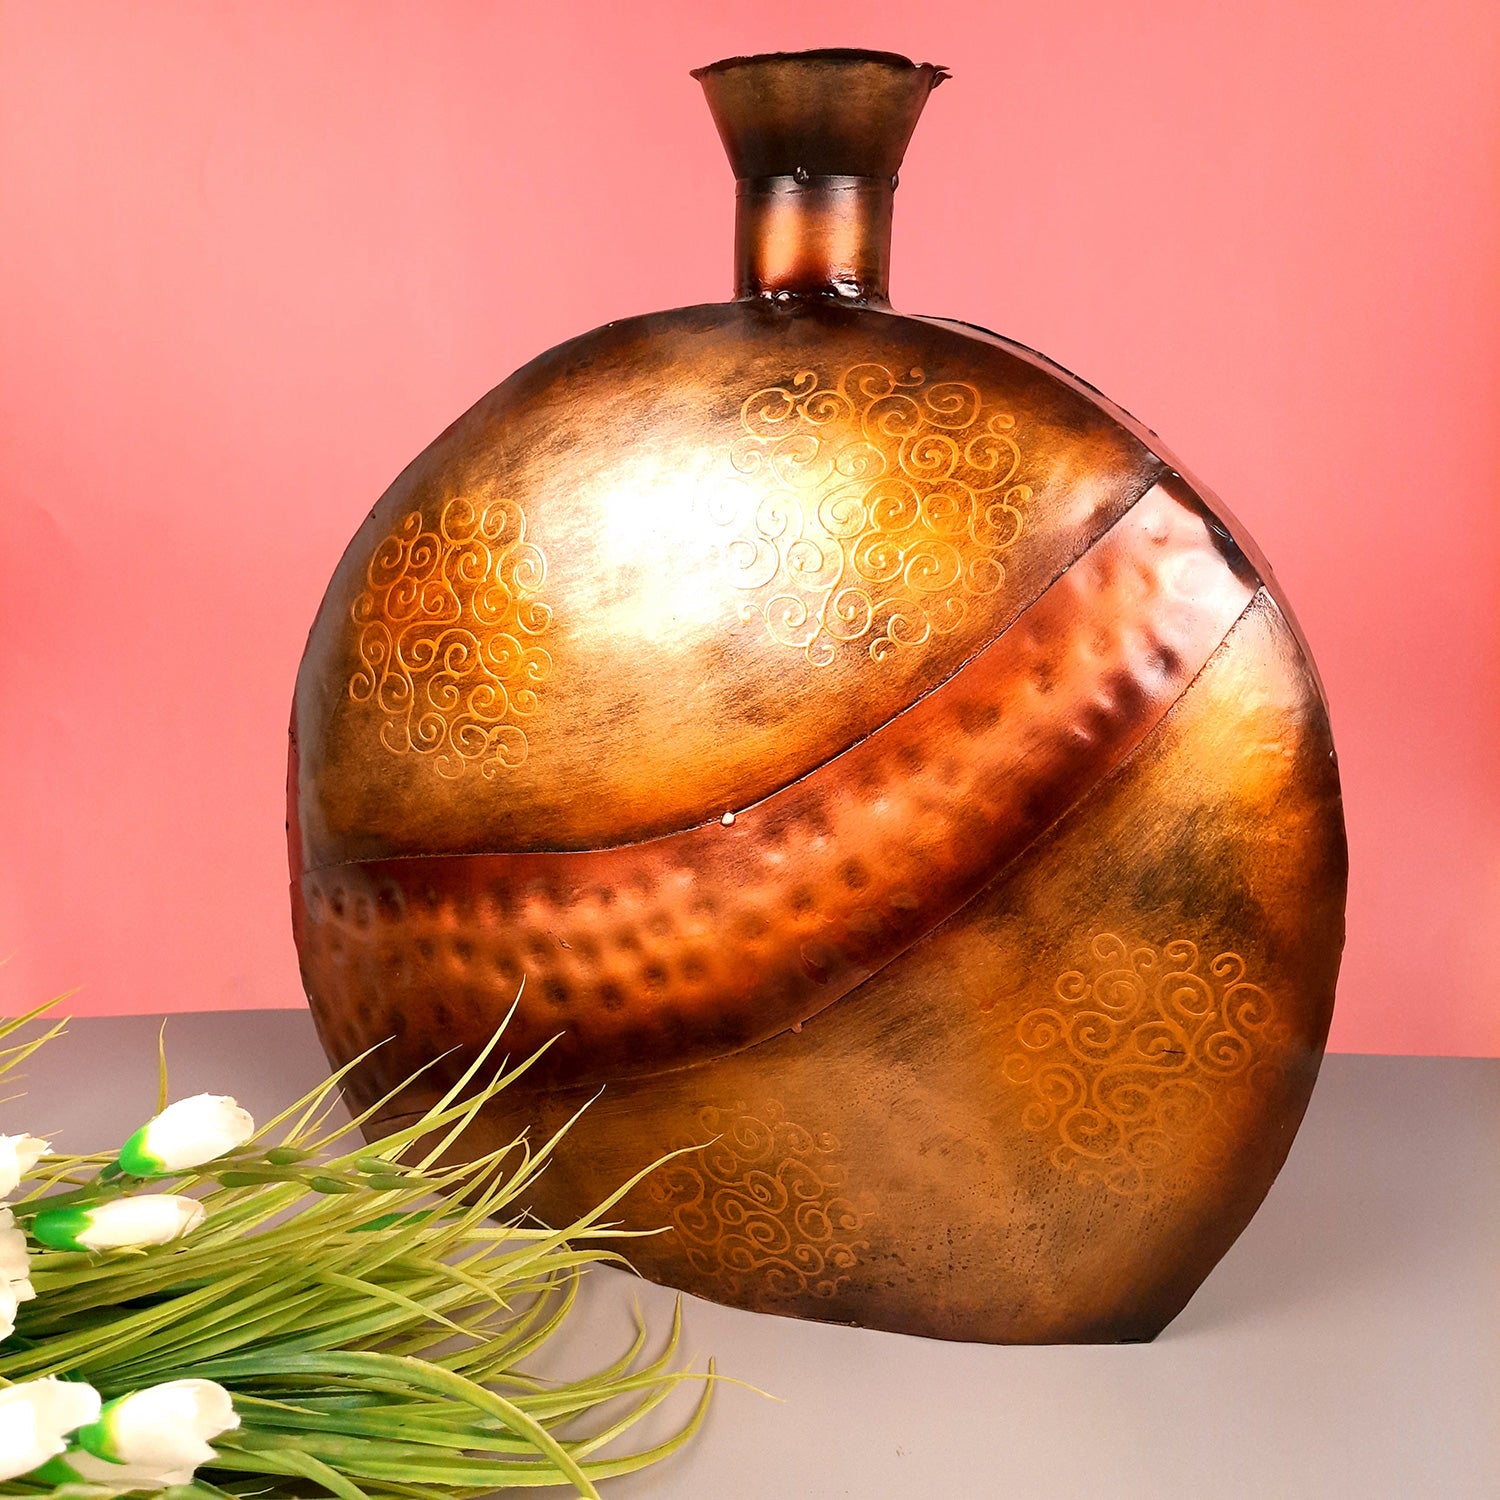 Flower Pot Big | Antique Metal Vase - For Home, Living Room, Dining Space, Corner Decor & Gifts - 10 Inch - Apkamart